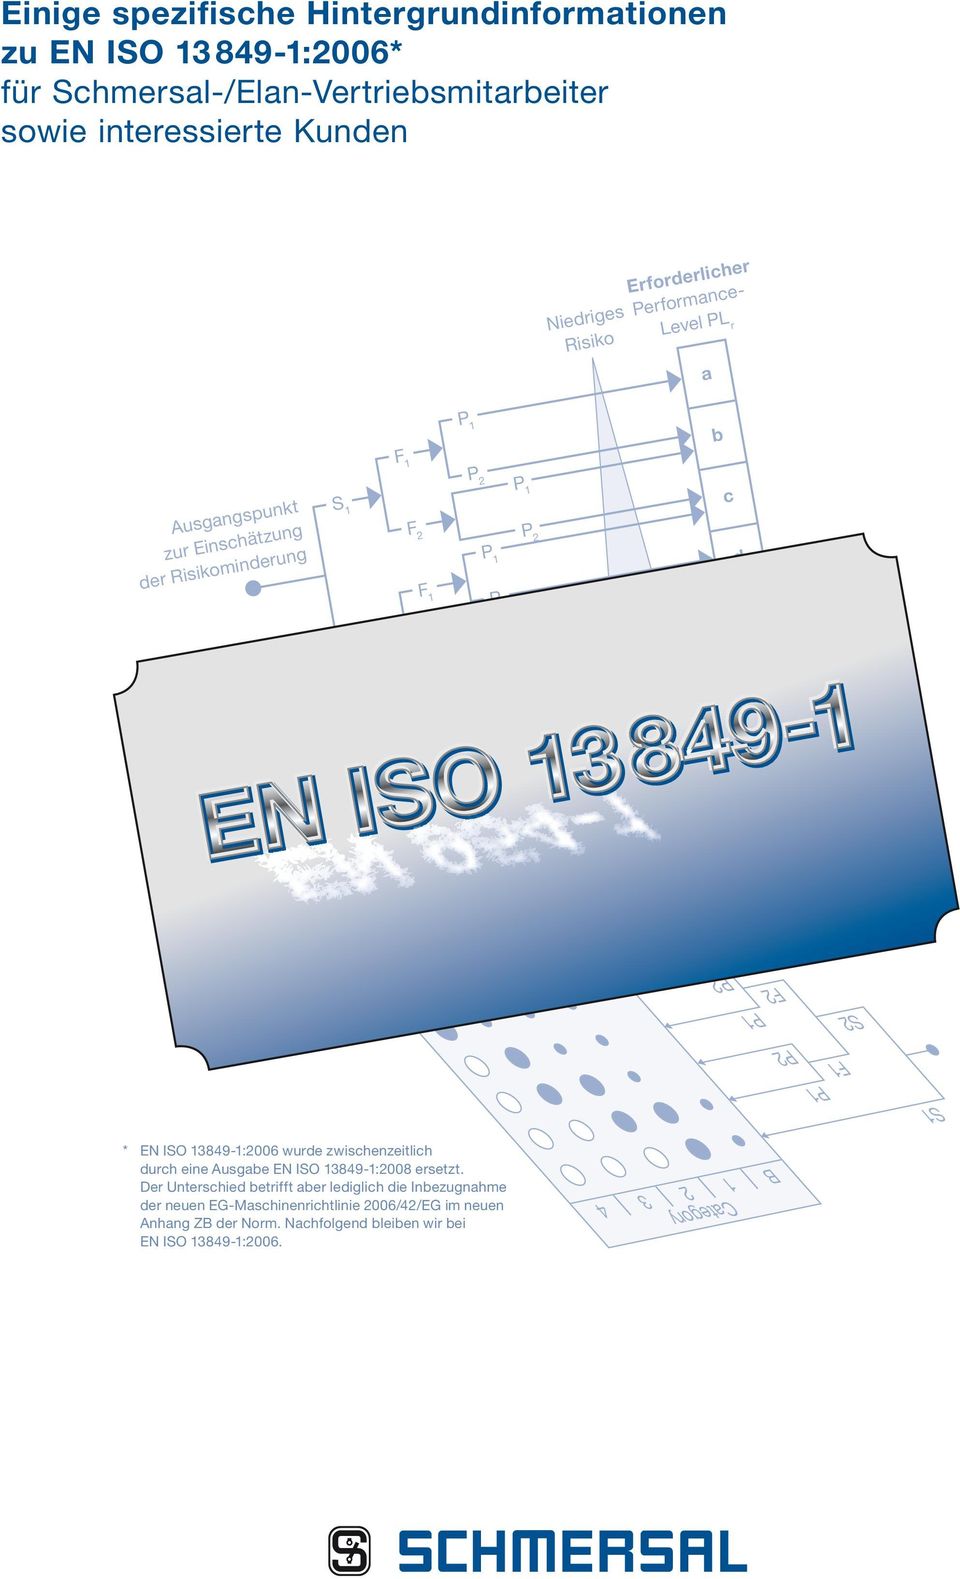 F1 P1 P2 S1 * EN ISO 13849-1:2006 wurde zwischenzeitlich durch eine Ausgabe EN ISO 13849-1:2008 ersetzt.